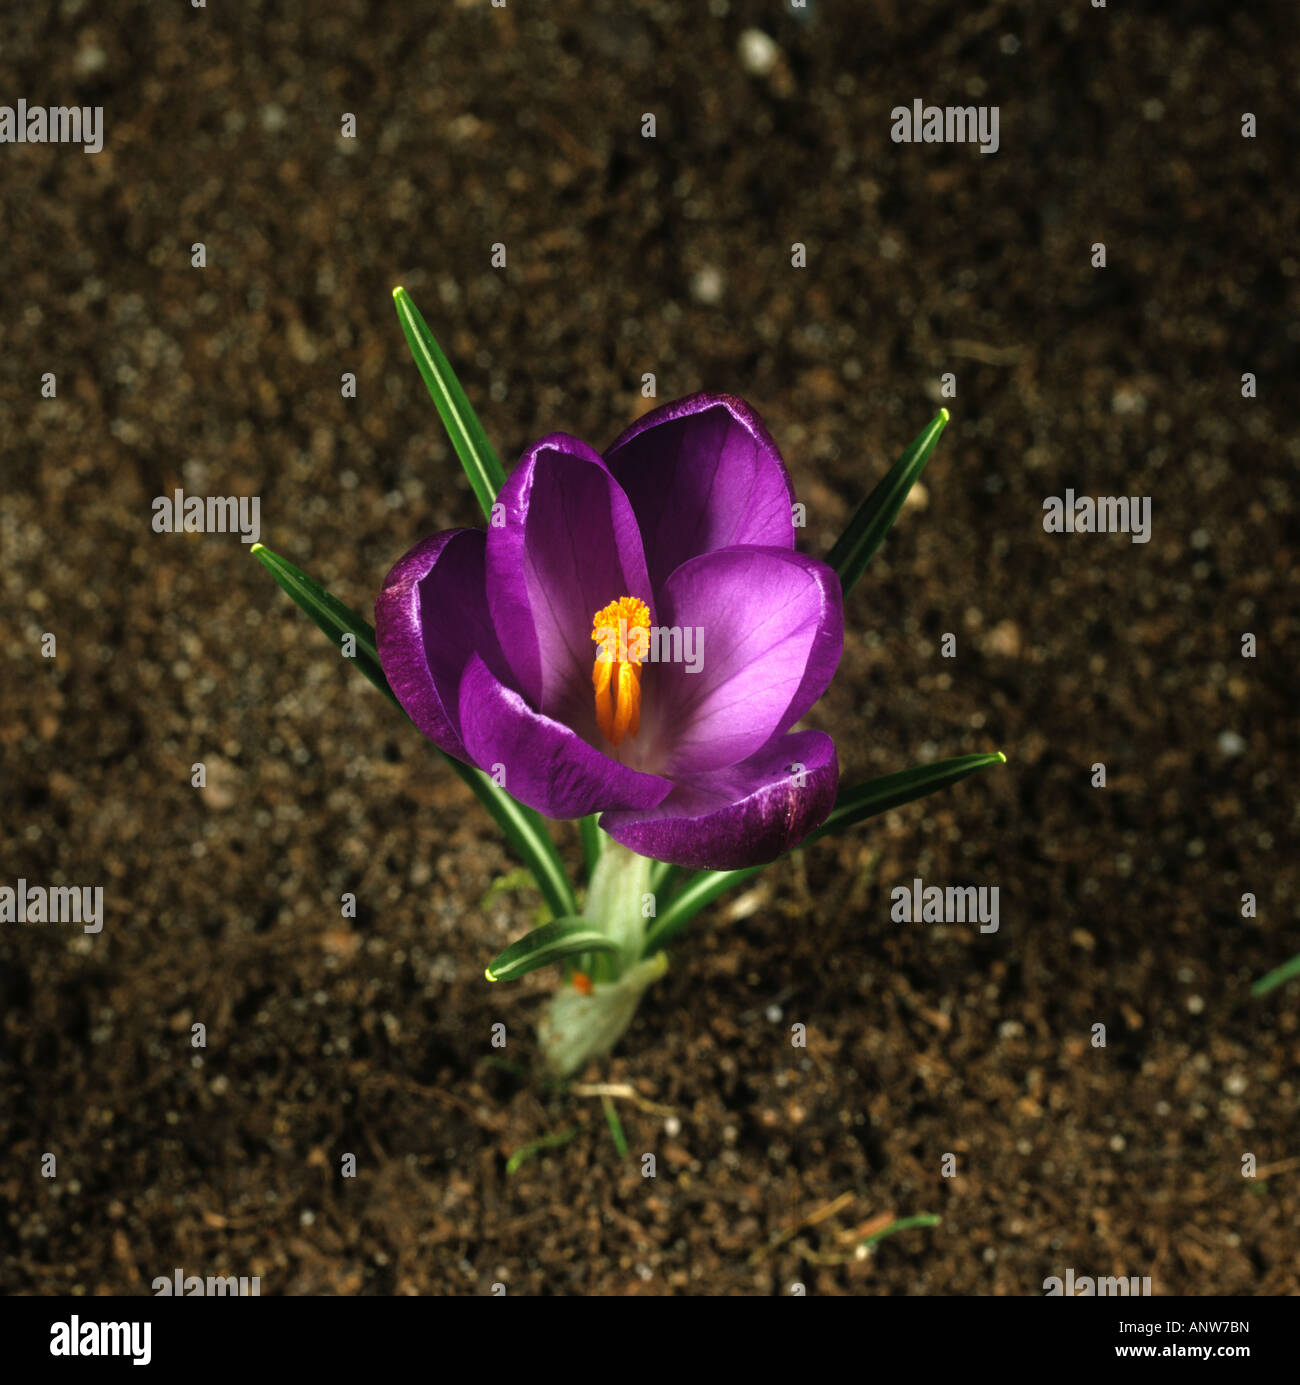 Troisième d'une série de photographies montrant l'ouverture d'une fleur de crocus Banque D'Images